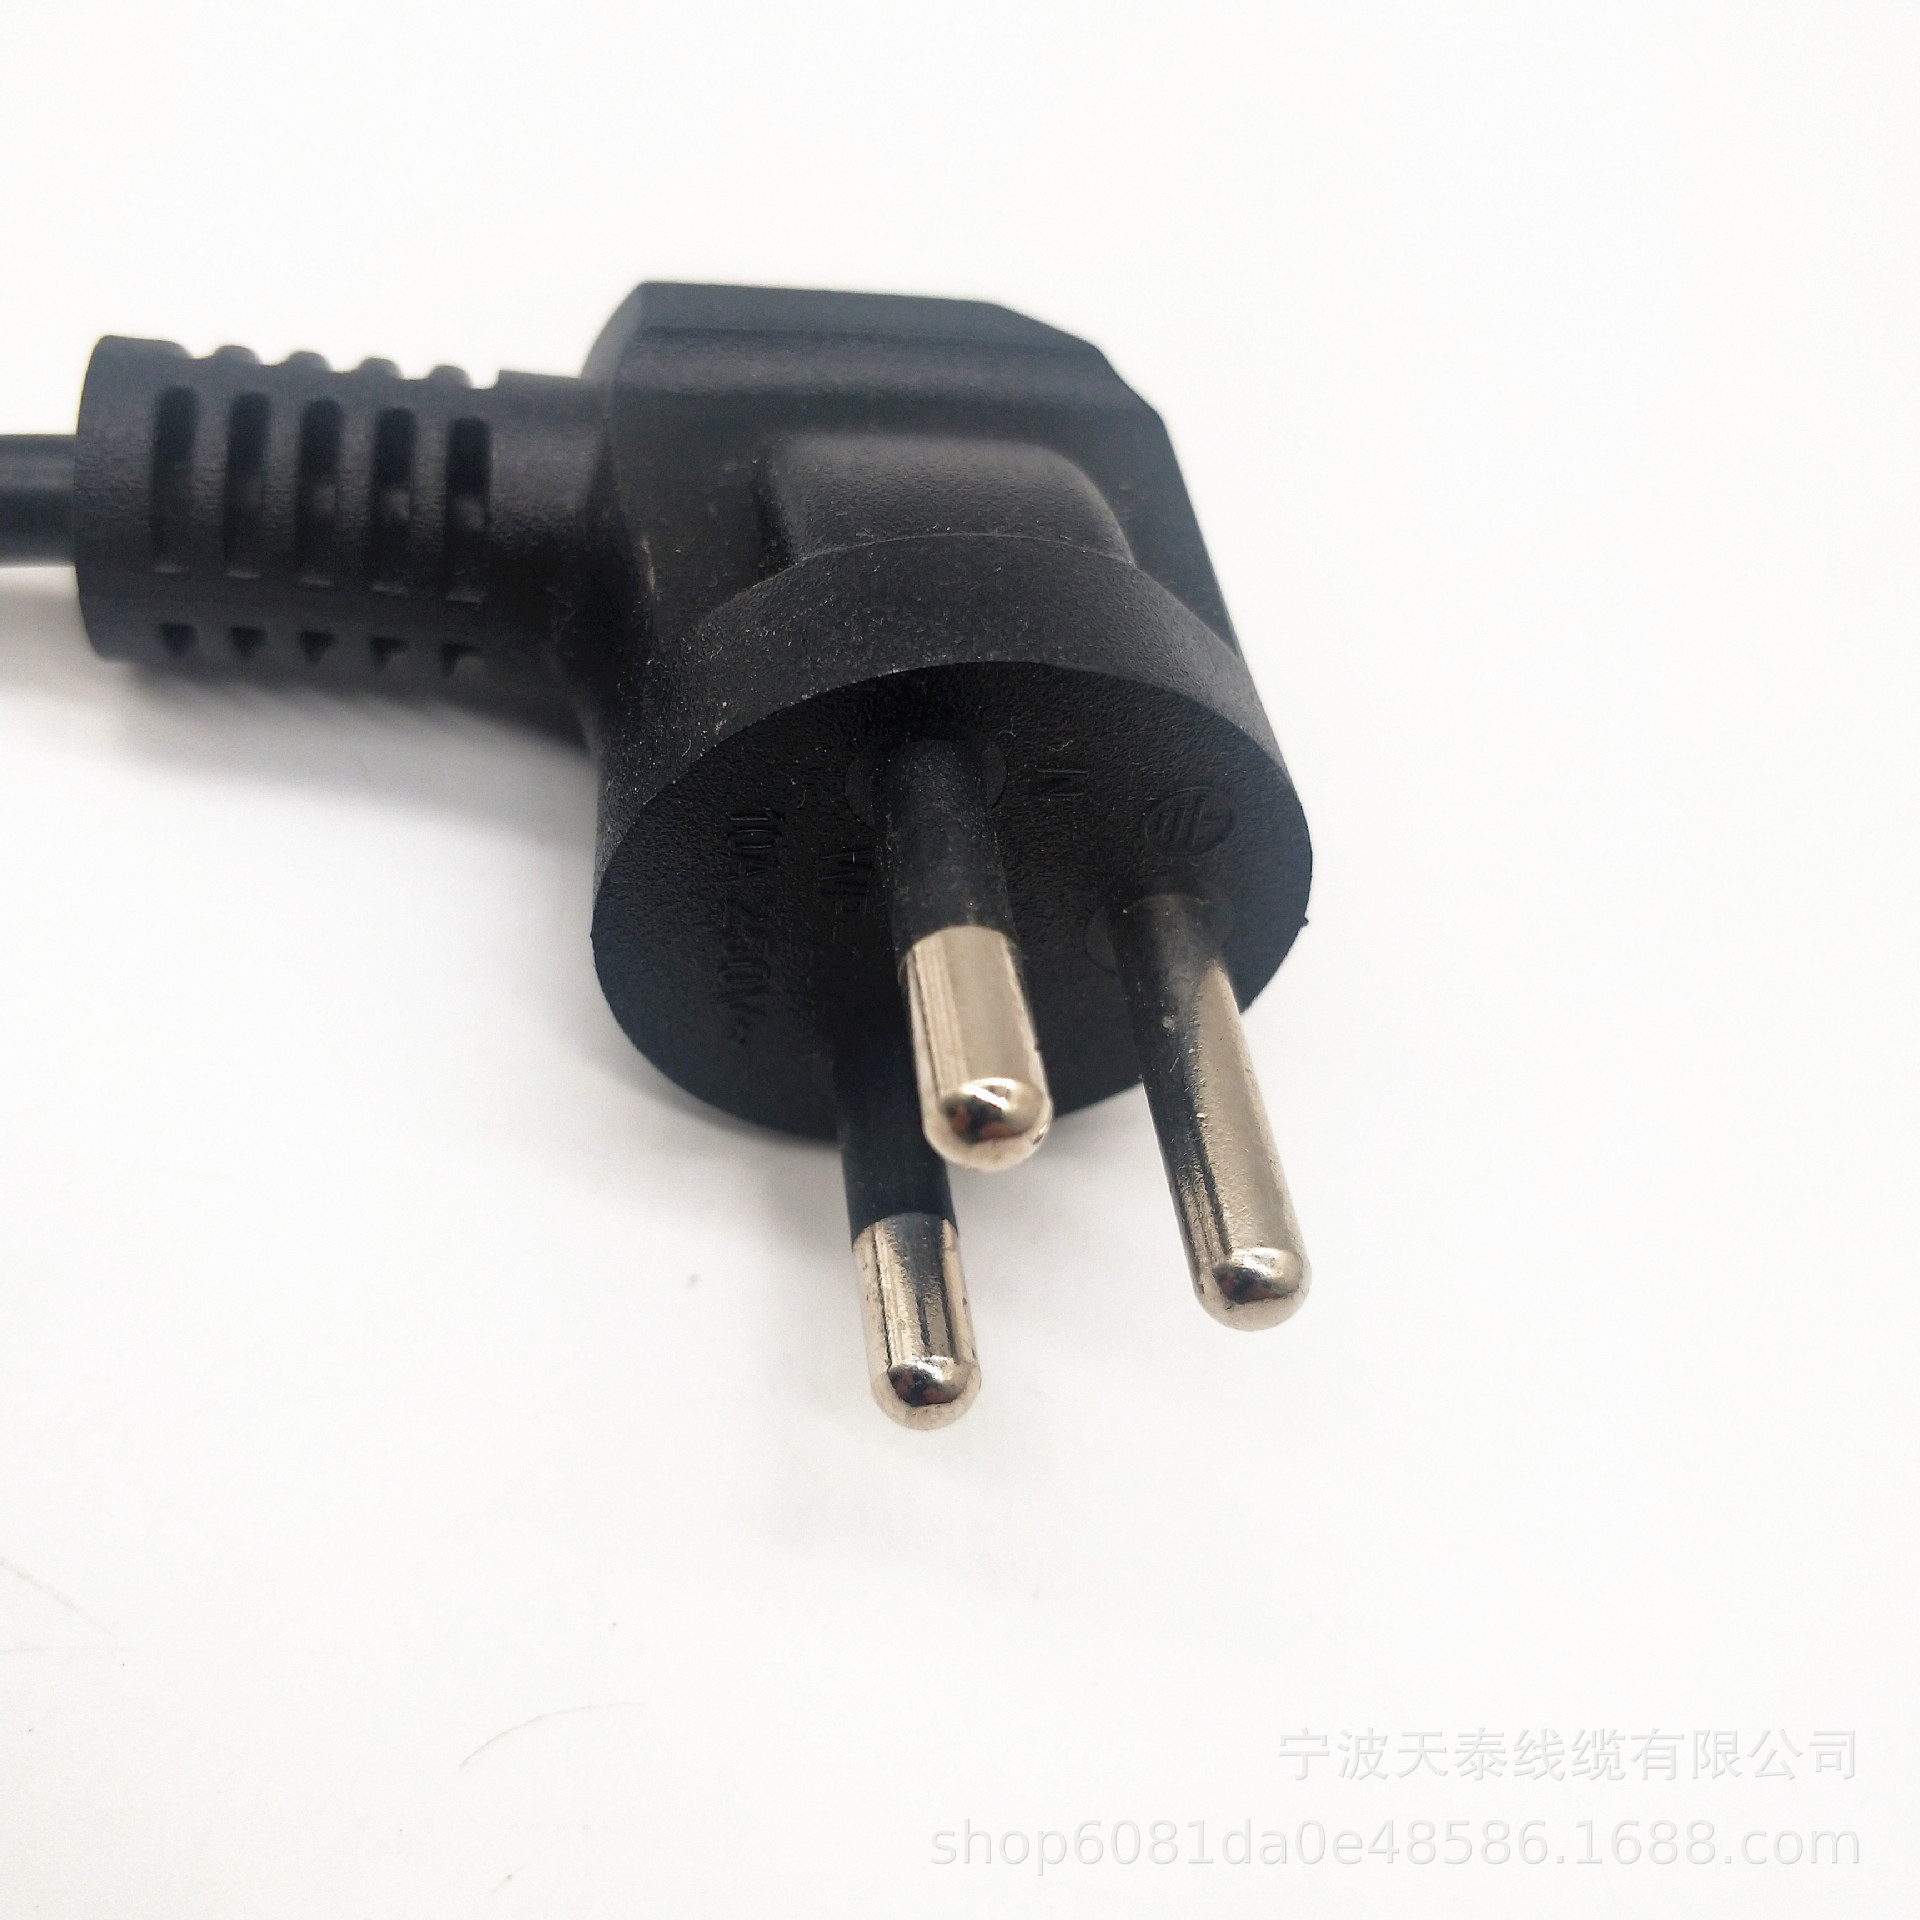 泰国标插座 - R5B - 稳不落 (中国 福建省 生产商) - 插头、插座 - 电子、电力 产品 「自助贸易」